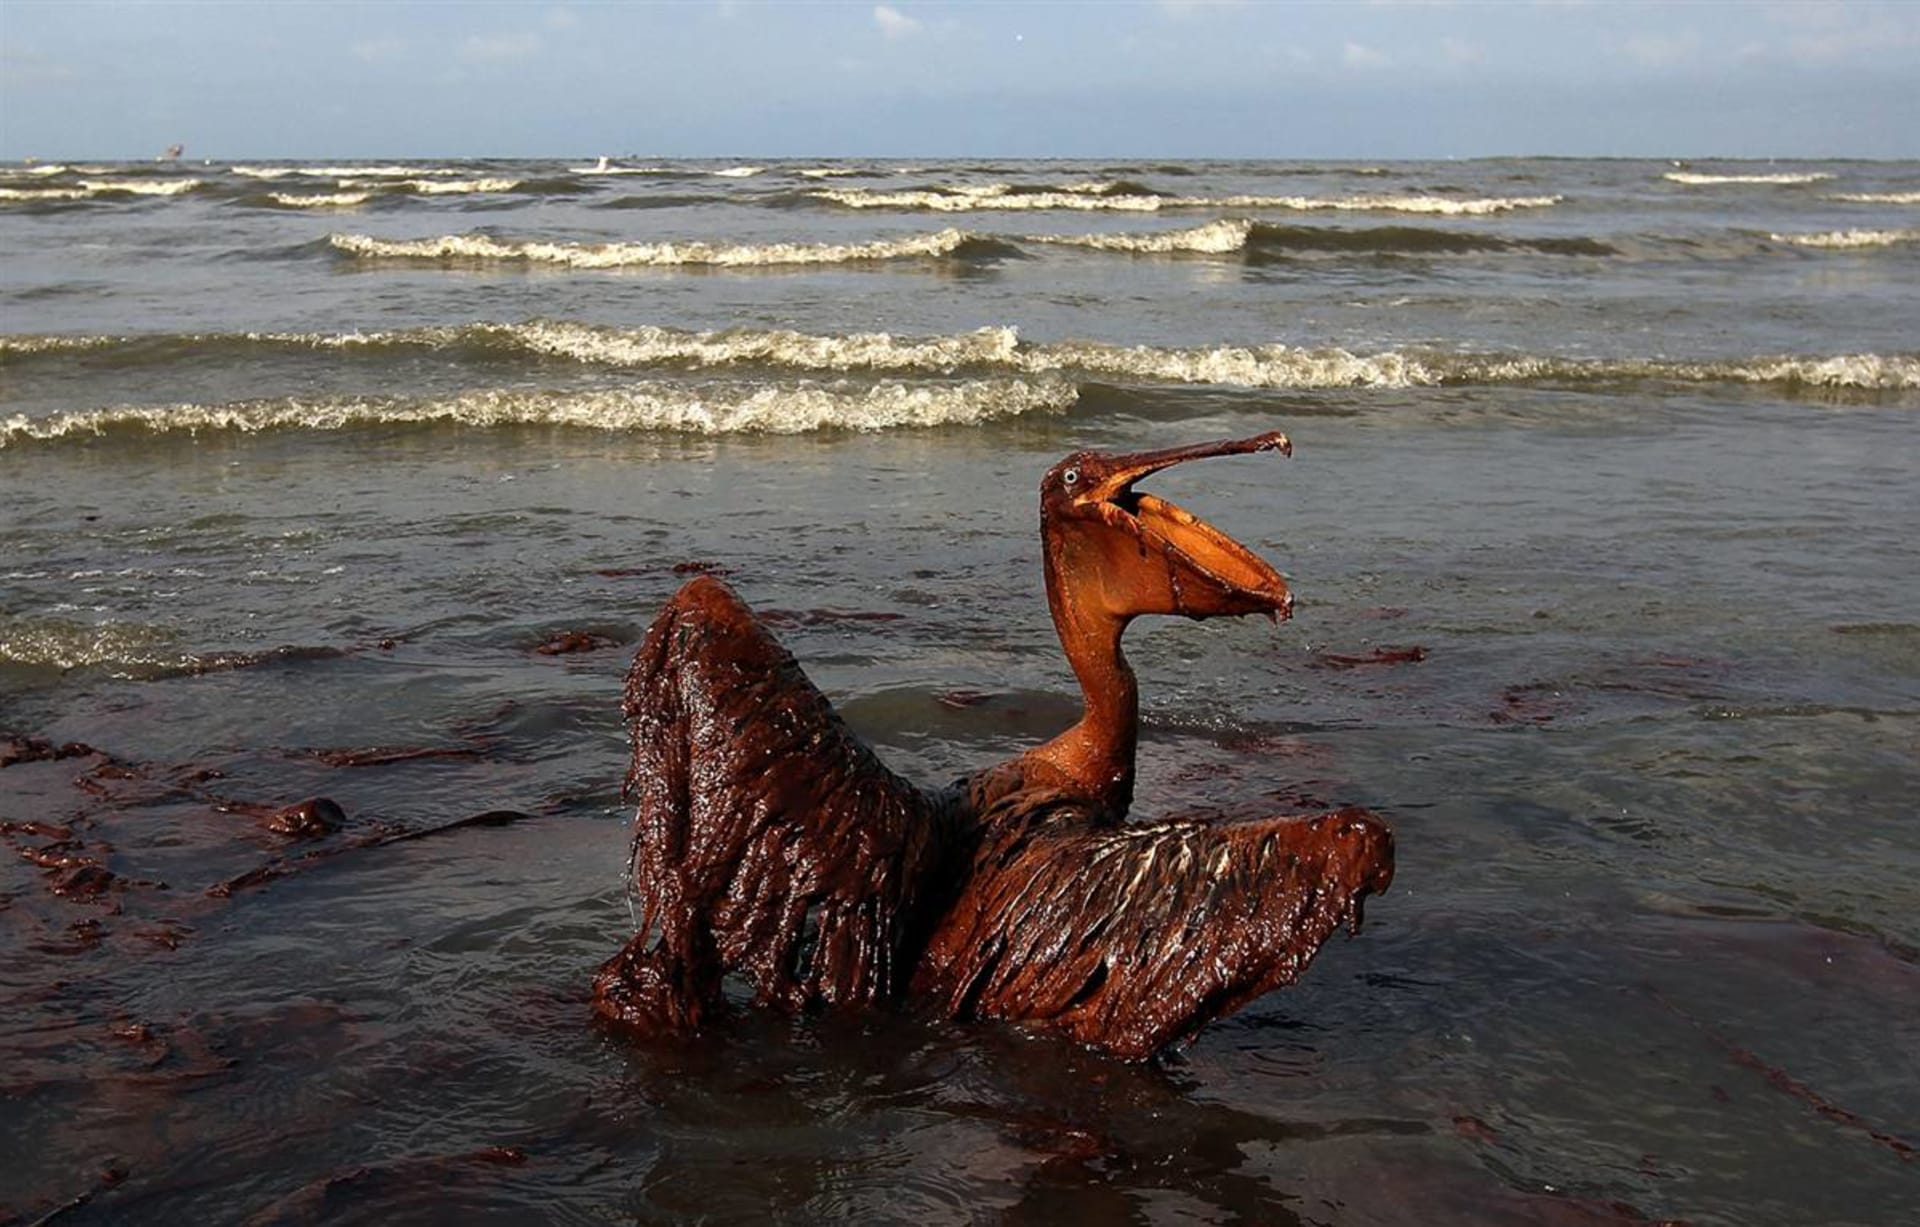 Zasažení ropou je pro zvířata zpravidla smrtelné. Ilustrační foto